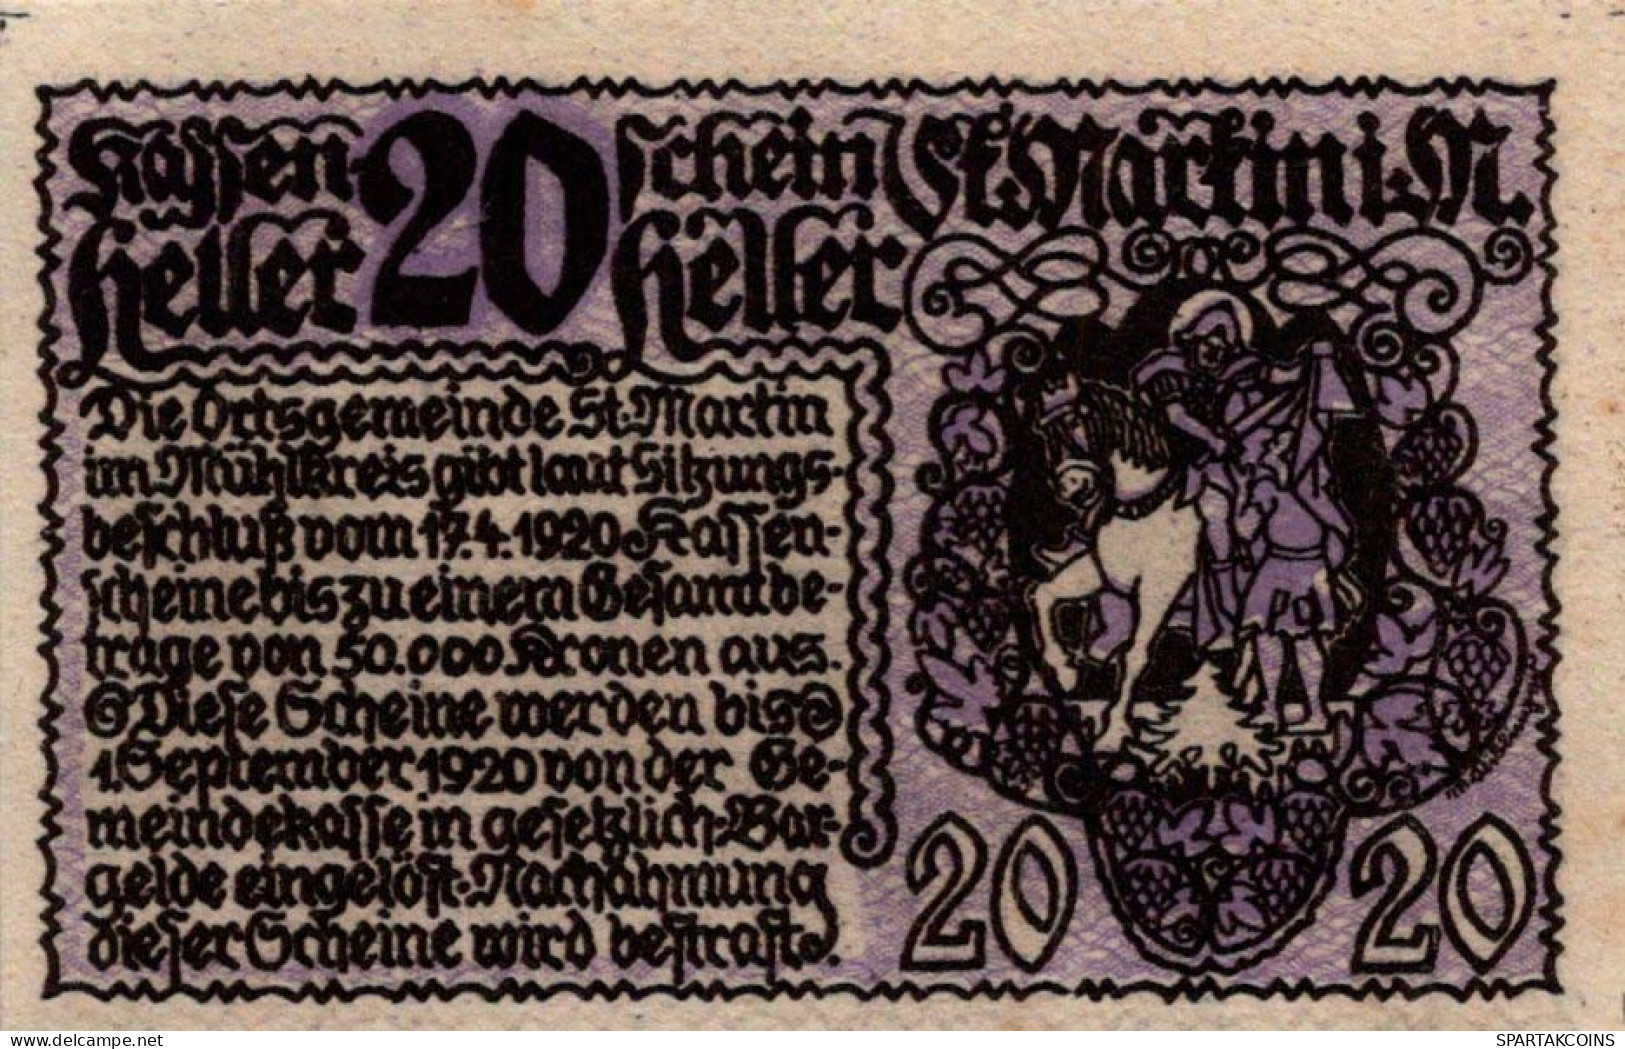 20 HELLER 1920 Stadt SANKT MARTIN IM MÜHLKREIS Oberösterreich Österreich #PE836 - Lokale Ausgaben